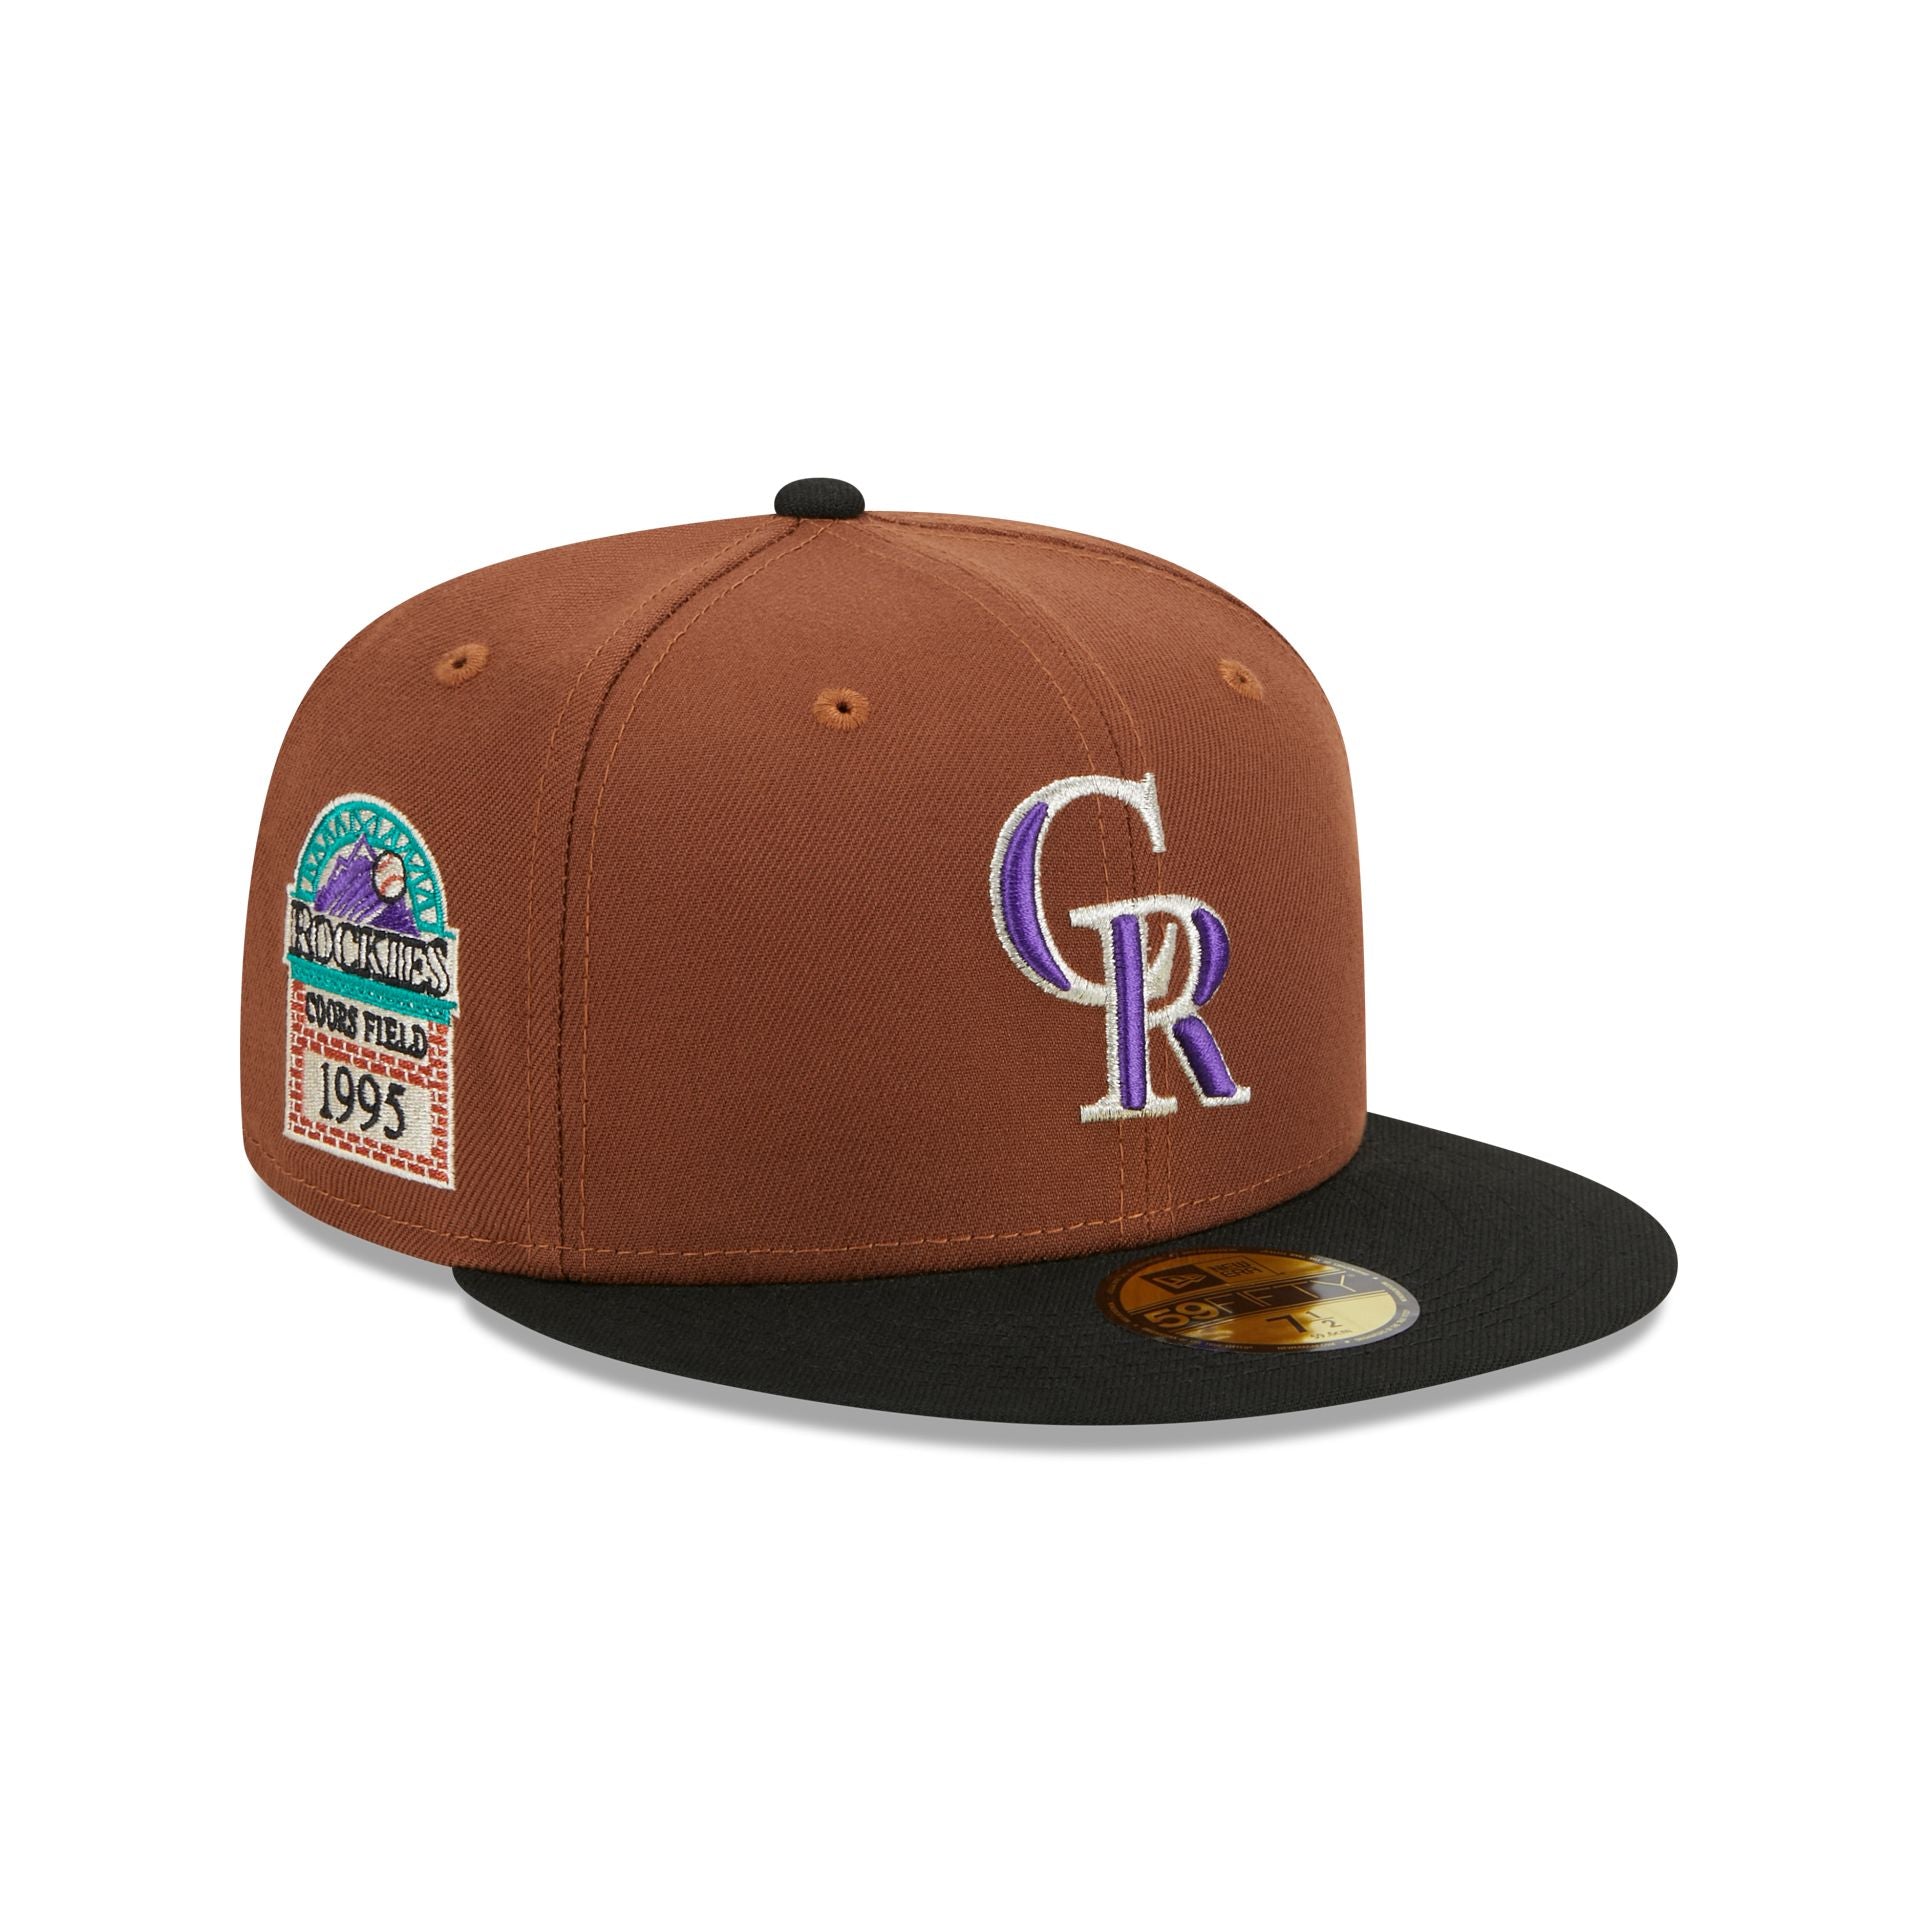 Colorado Rockies Hats & Caps – New Era Cap